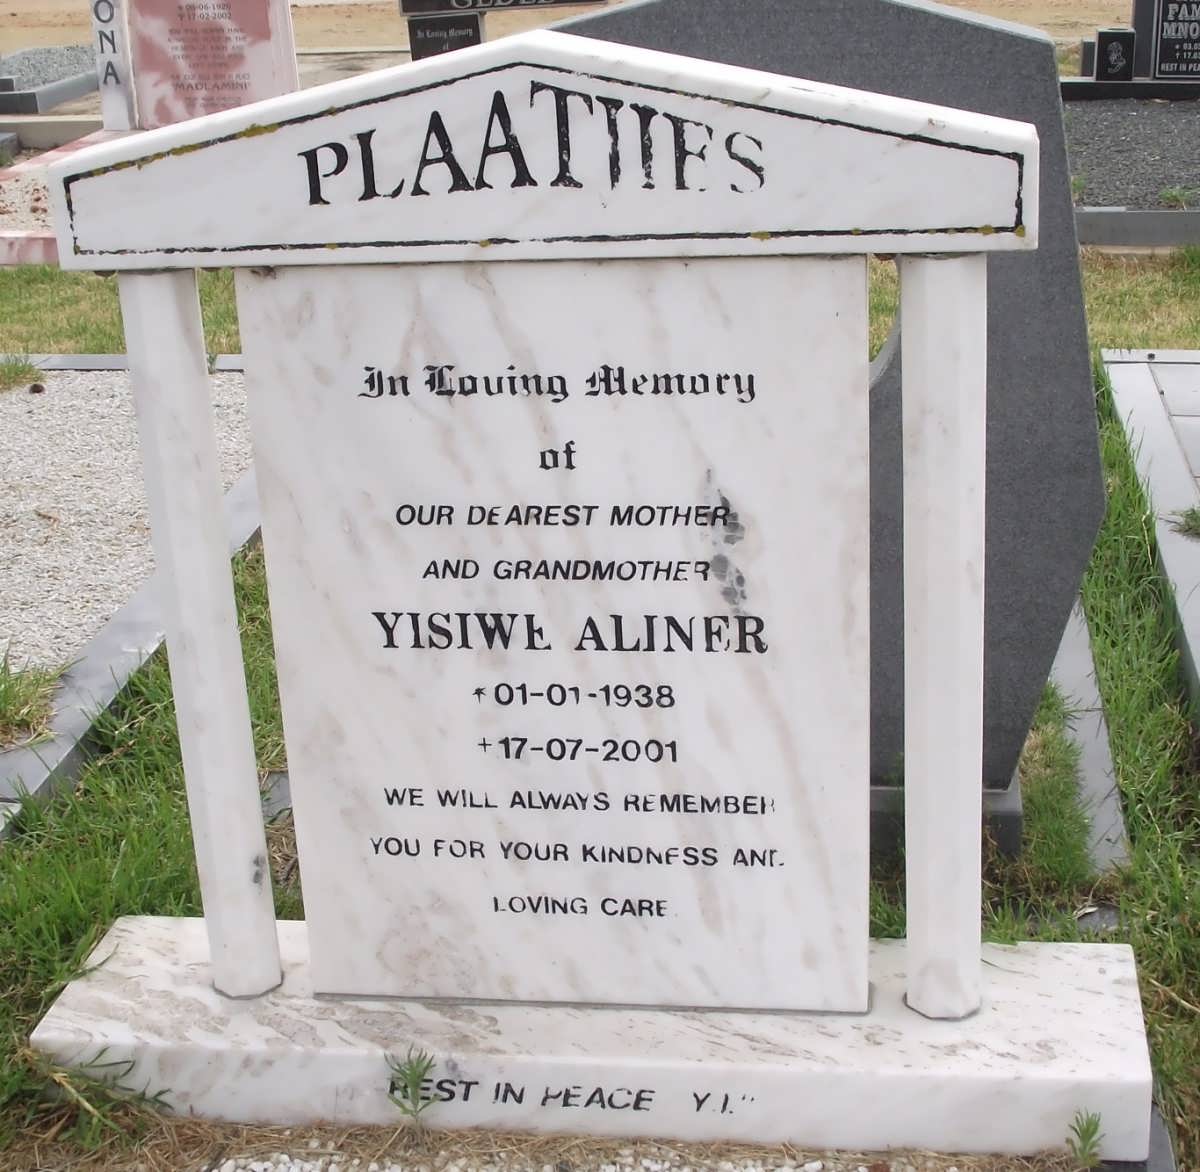 PLAATJIES Yisiwe Aliner 1938-2001